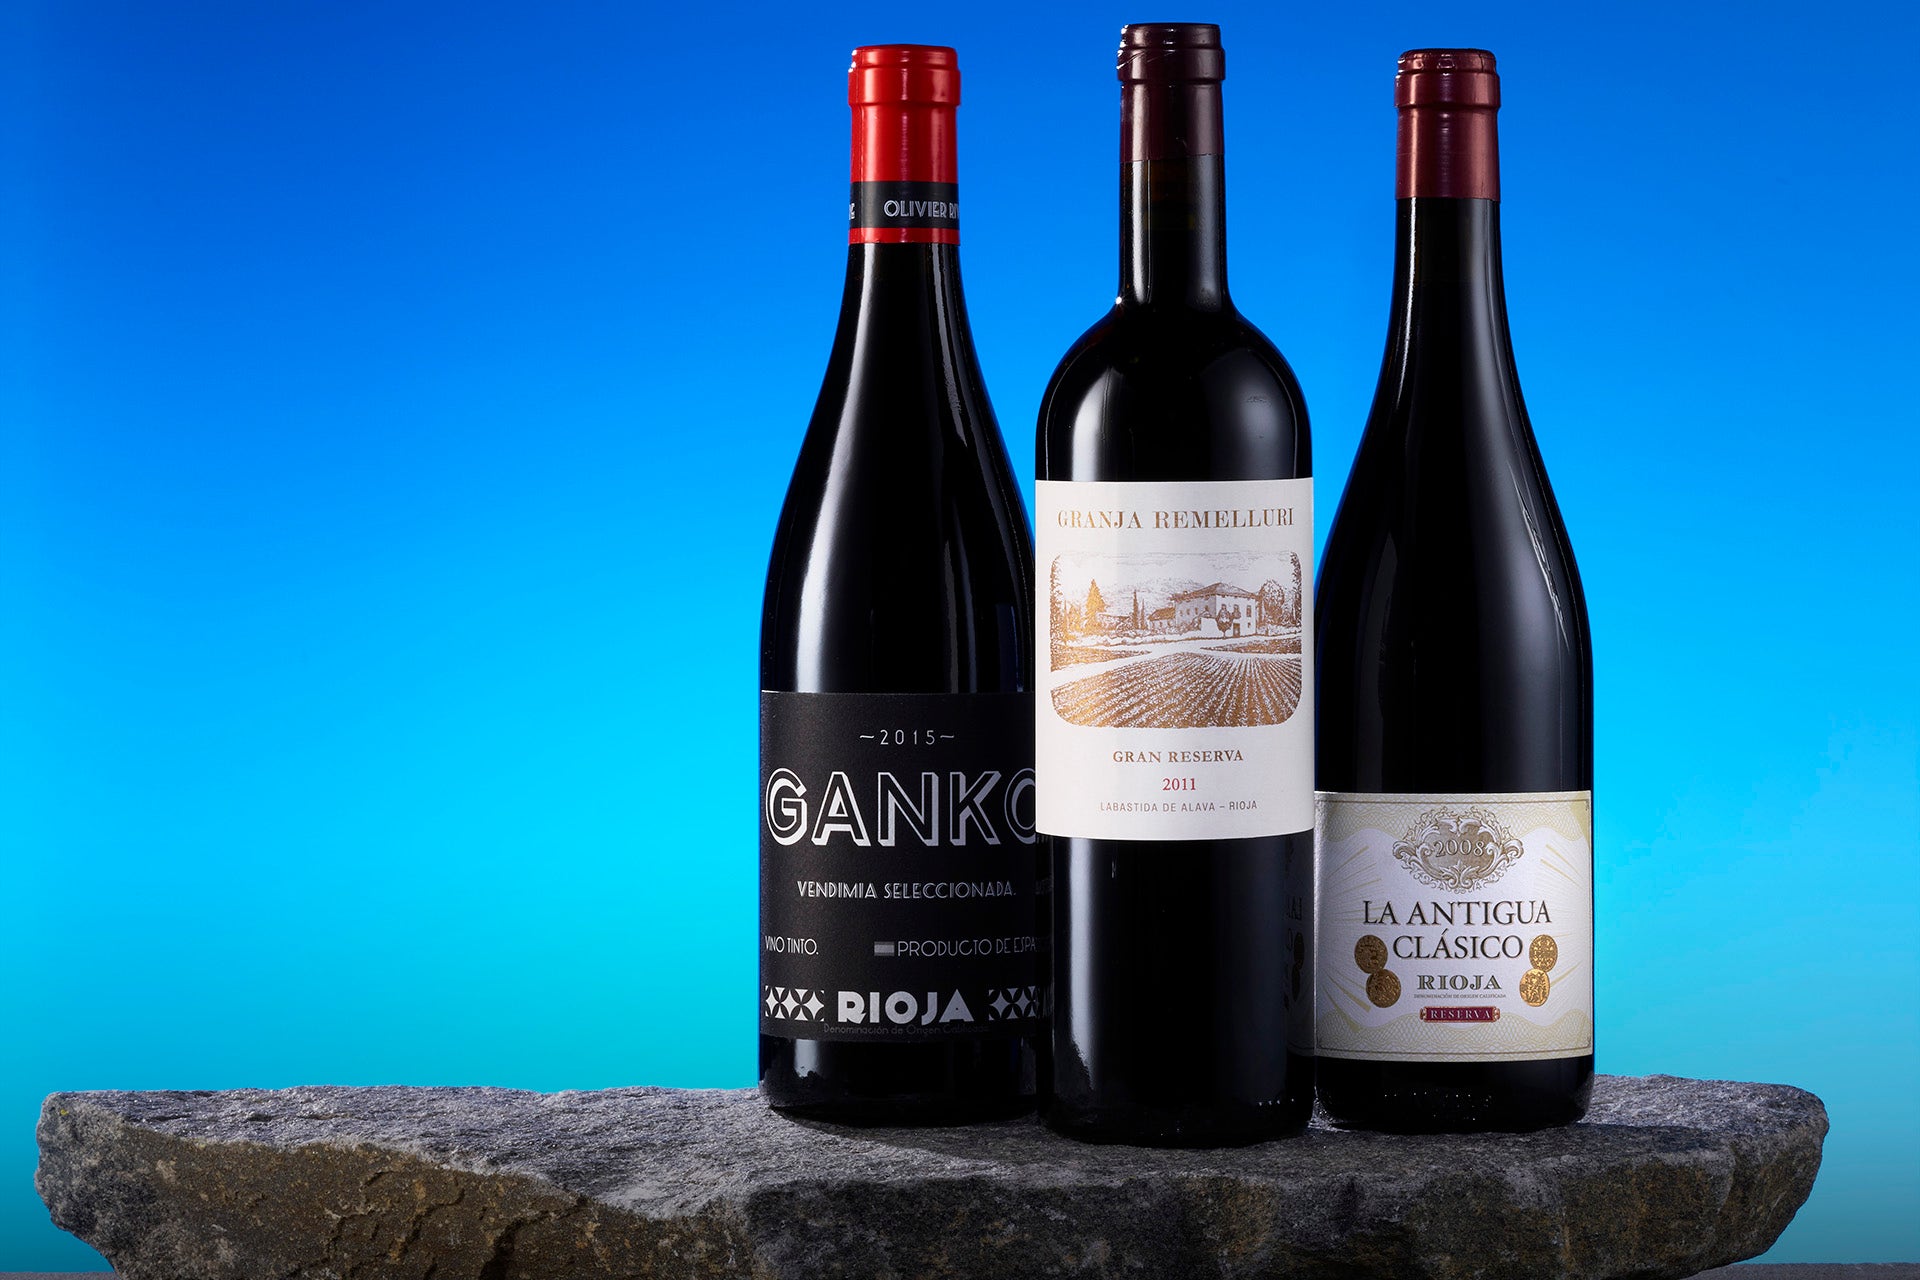 High elevation wines: Olivier Rivière 2015 Ganko (Rioja), Remelluri 2011 Granja Gran Reserva (Rioja) and Alberto Orte 2008 La Antigua Clásico Reserva (Rioja) 